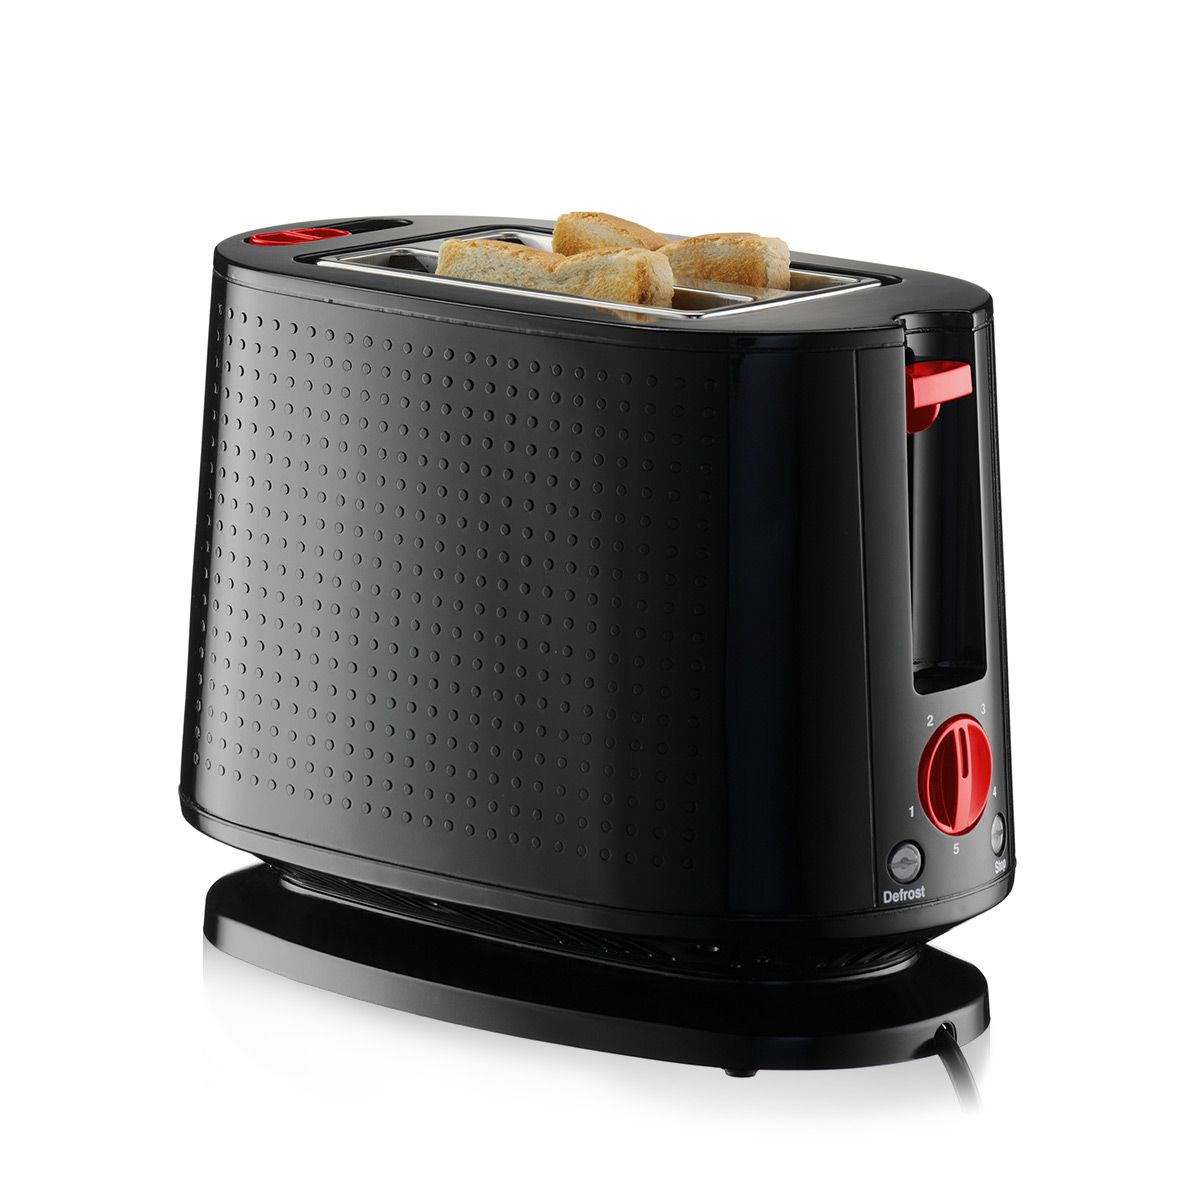 Bodum Bistro 2 Slice Toaster, Black